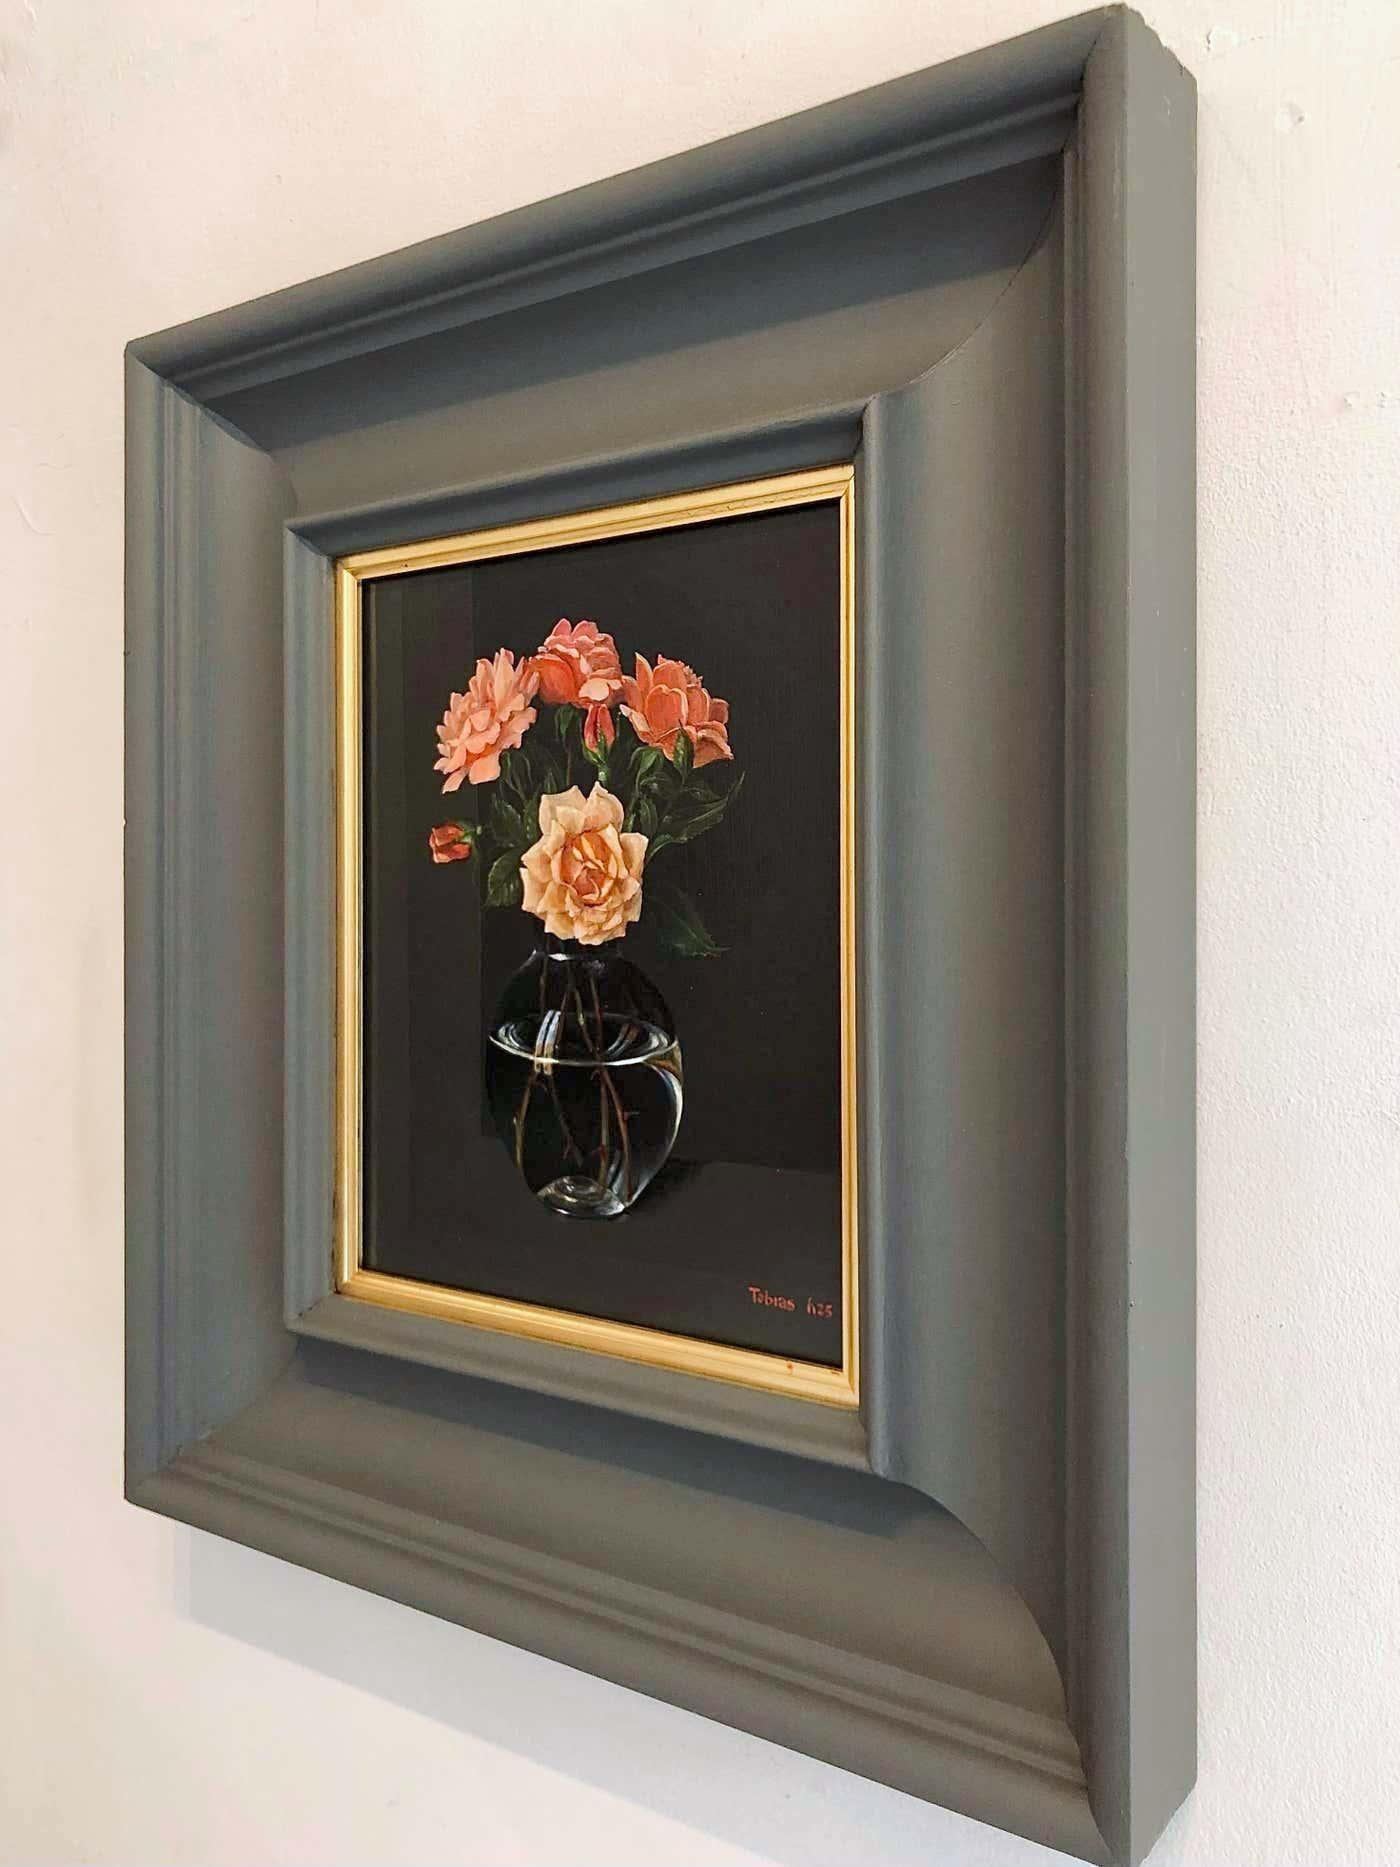 Roses de Rene His - peintures à l'huile hyperréalistes de natures mortes - Art contemporain - Réalisme Painting par Tobias Harrison